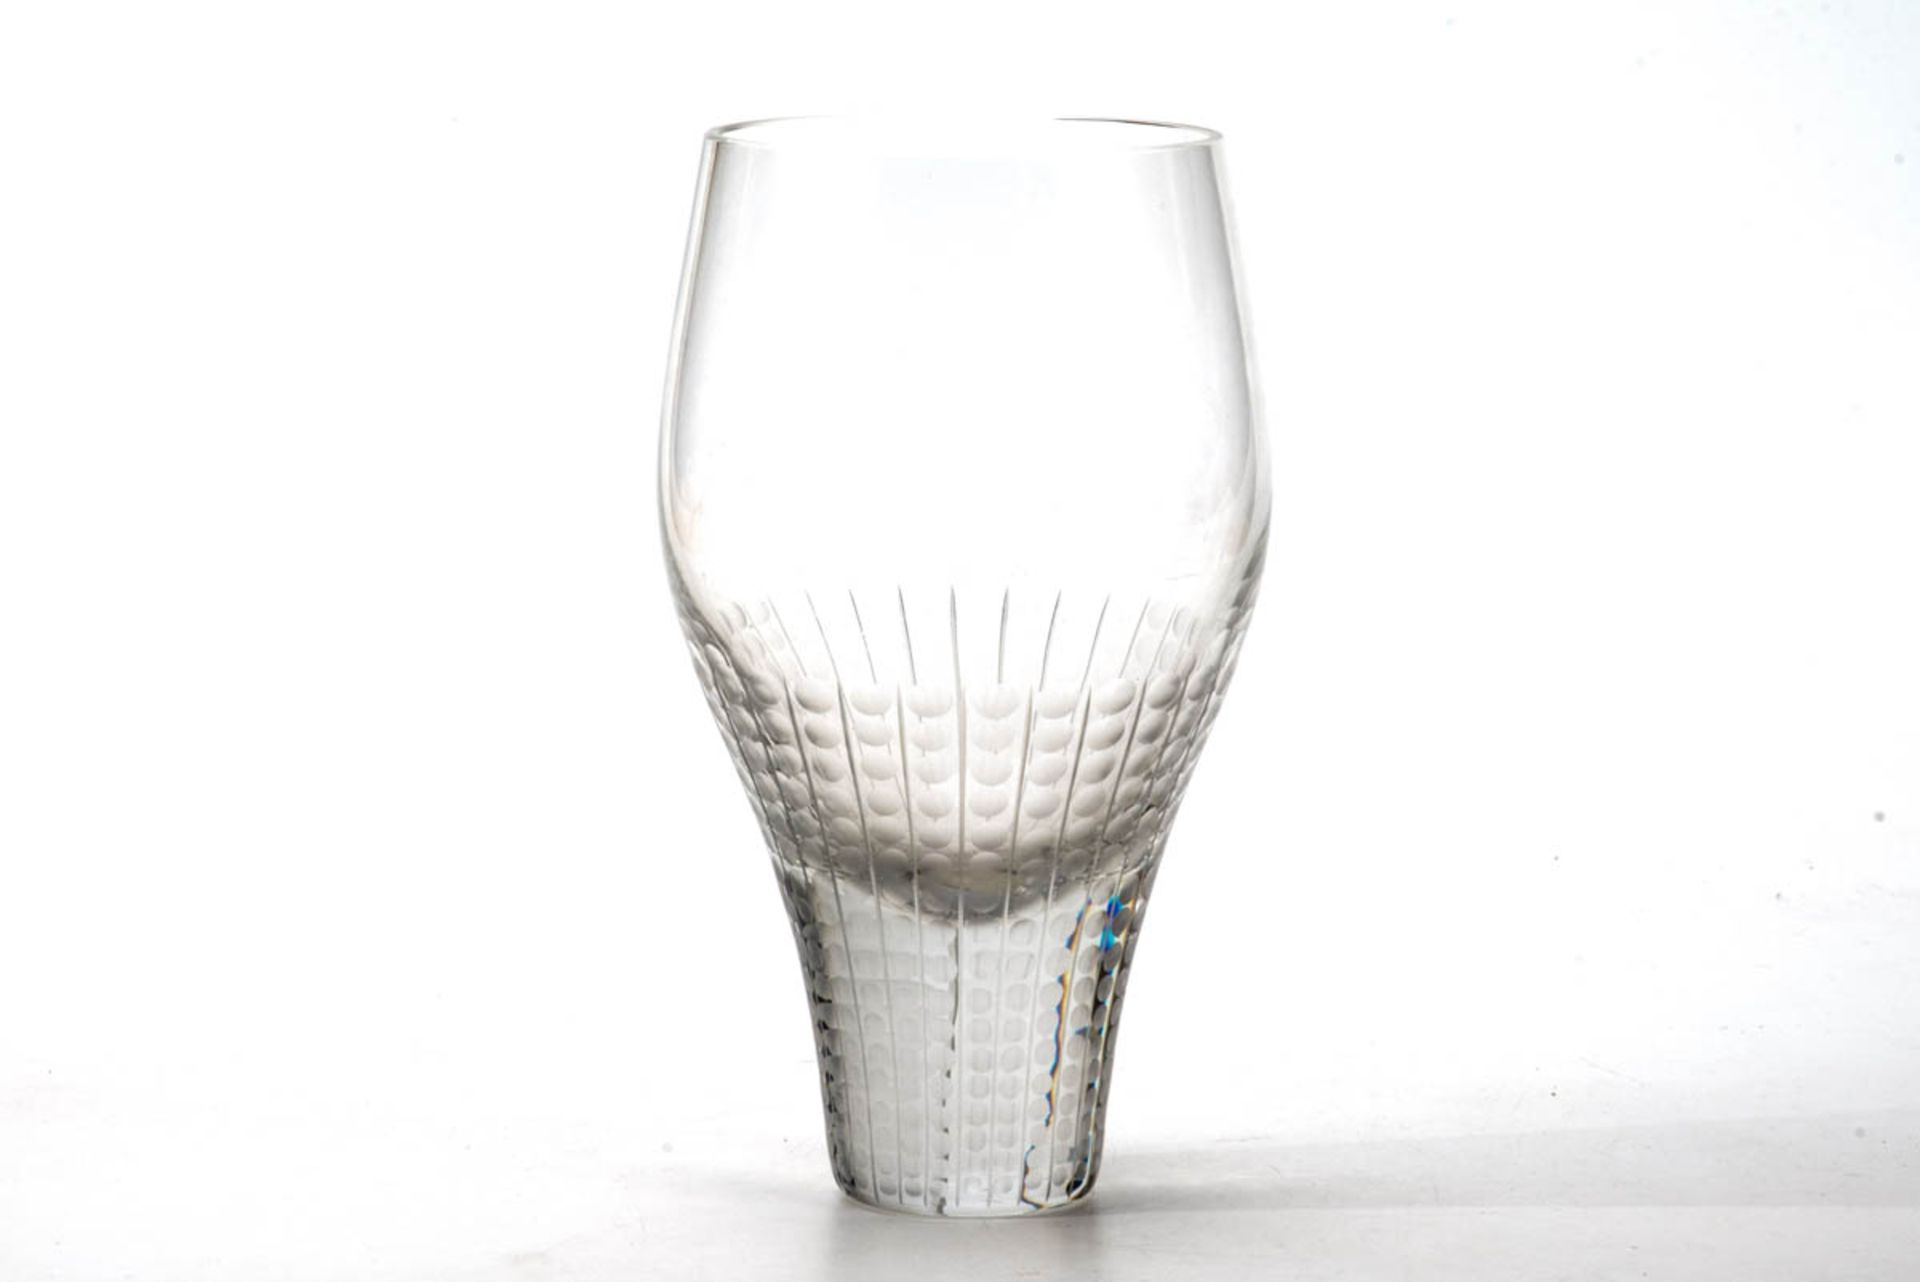 Ziervase, RosenthalFarbloses Kristallglas mit Mattschliff. Runder sich stark erweiternder leicht